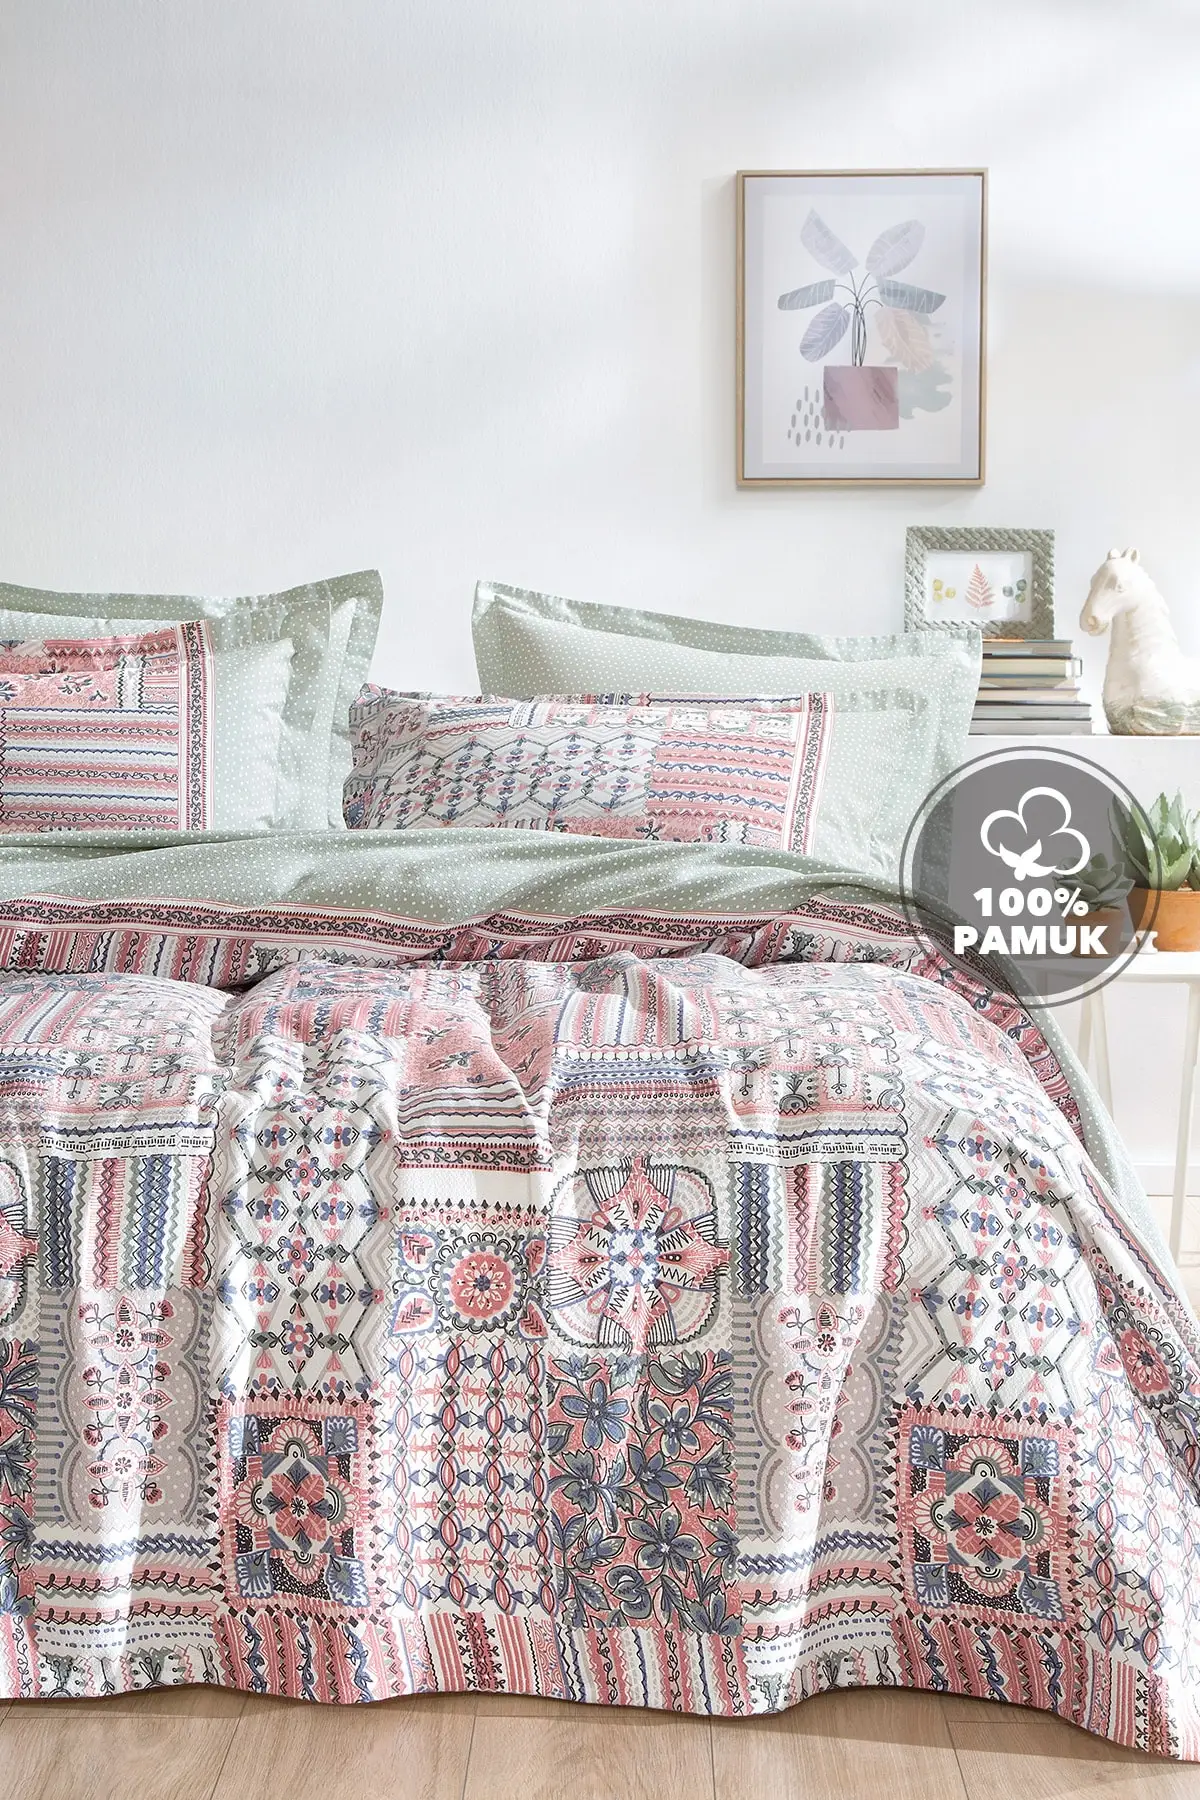 

Mira двойная Щука набор-зеленая щука и щука с розовым хлопком 200x230 покрышки текстиль для спальни мебель для дома